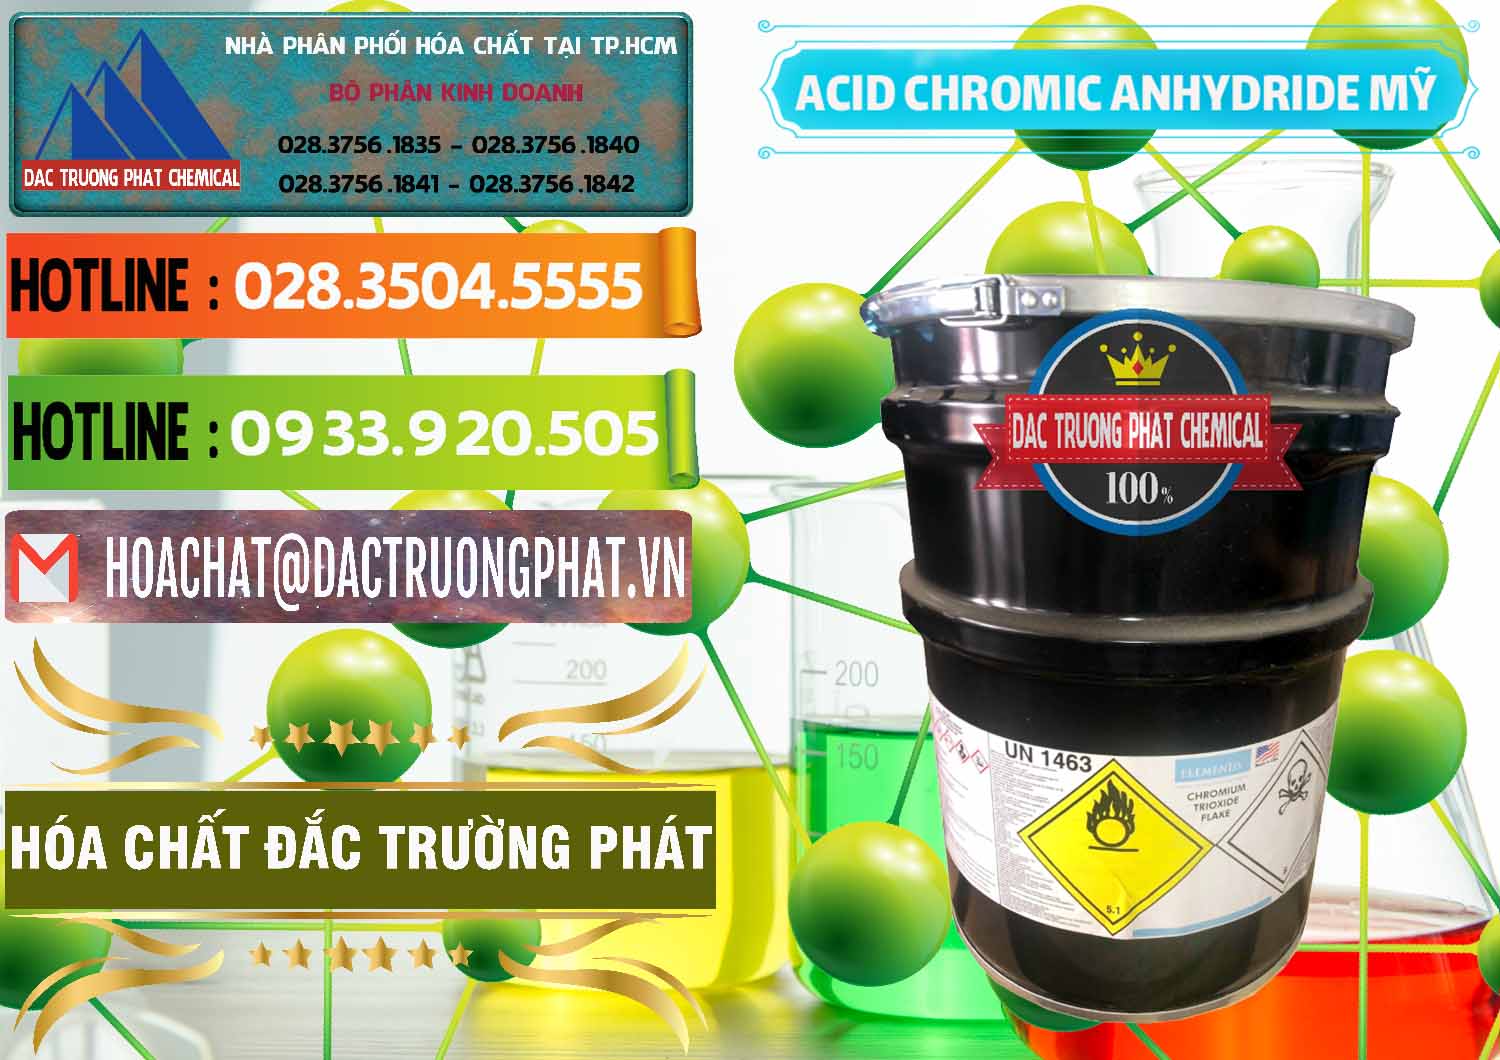 Đơn vị chuyên cung cấp & bán Acid Chromic Anhydride - Cromic CRO3 USA Mỹ - 0364 - Công ty chuyên cung cấp và bán hóa chất tại TP.HCM - cungcaphoachat.com.vn